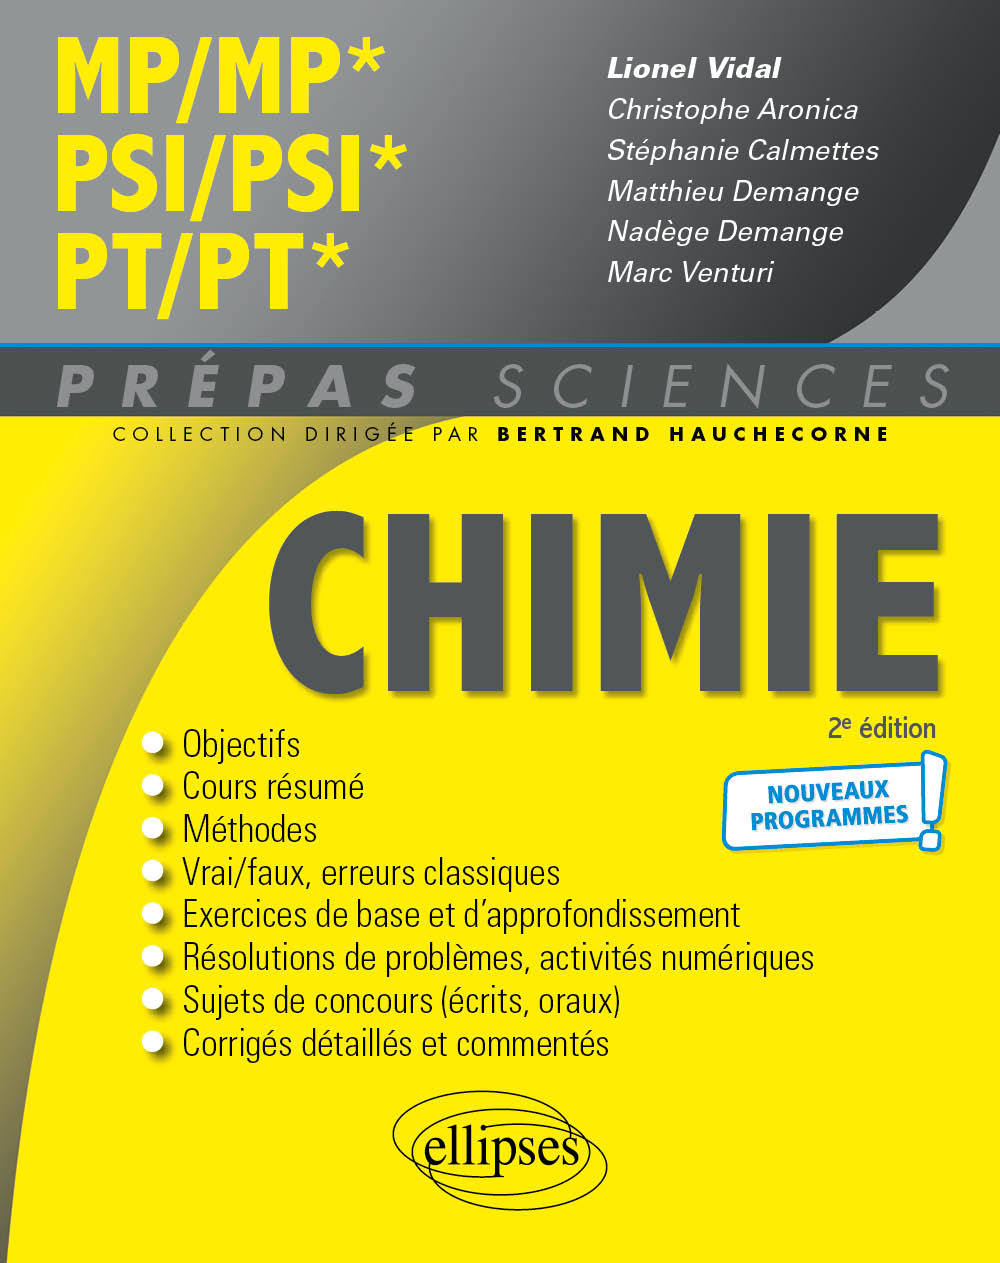 Kniha Chimie MP/MP* PSI/PSI* PT/PT*- Programme 2022 Vidal